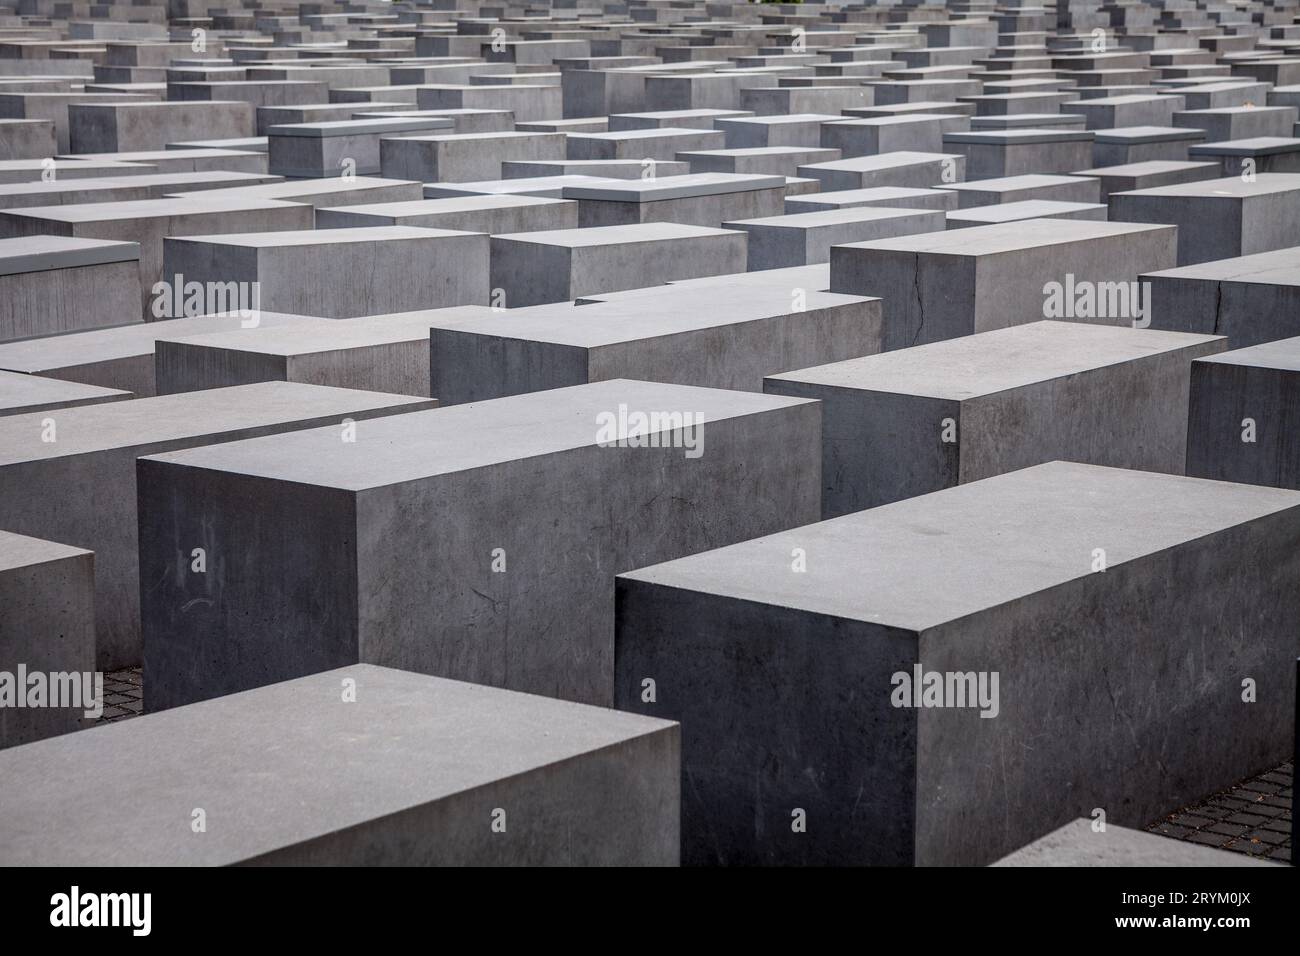 Mémorial des Juifs assassinés d'Europe / Mémorial de l'Holocauste, Berlin, Allemagne Banque D'Images